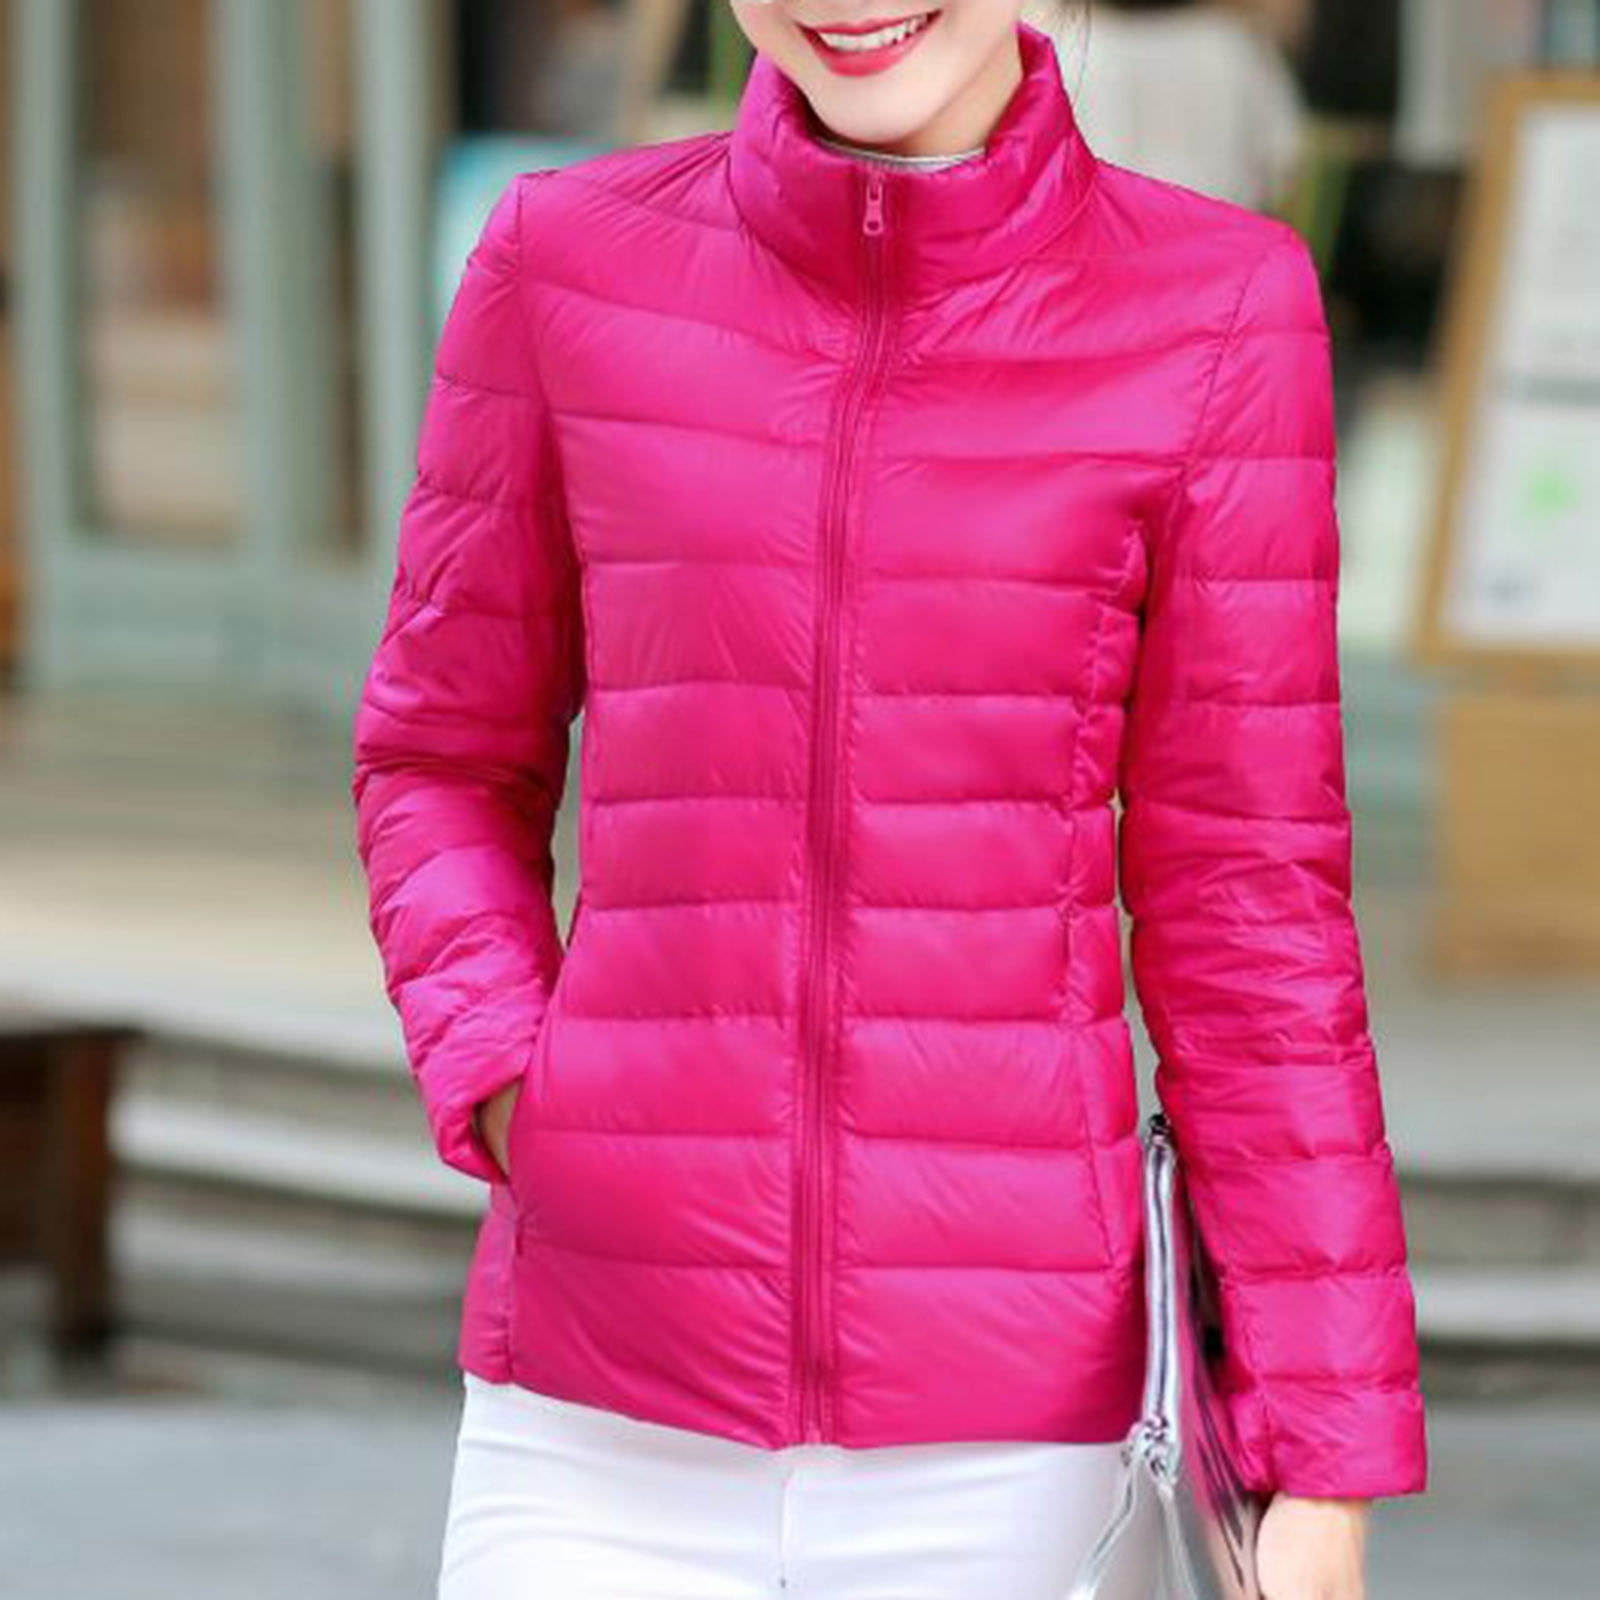 Women's Lightweight Packable Puffer Jacket Long Sleeve Comfortable ...